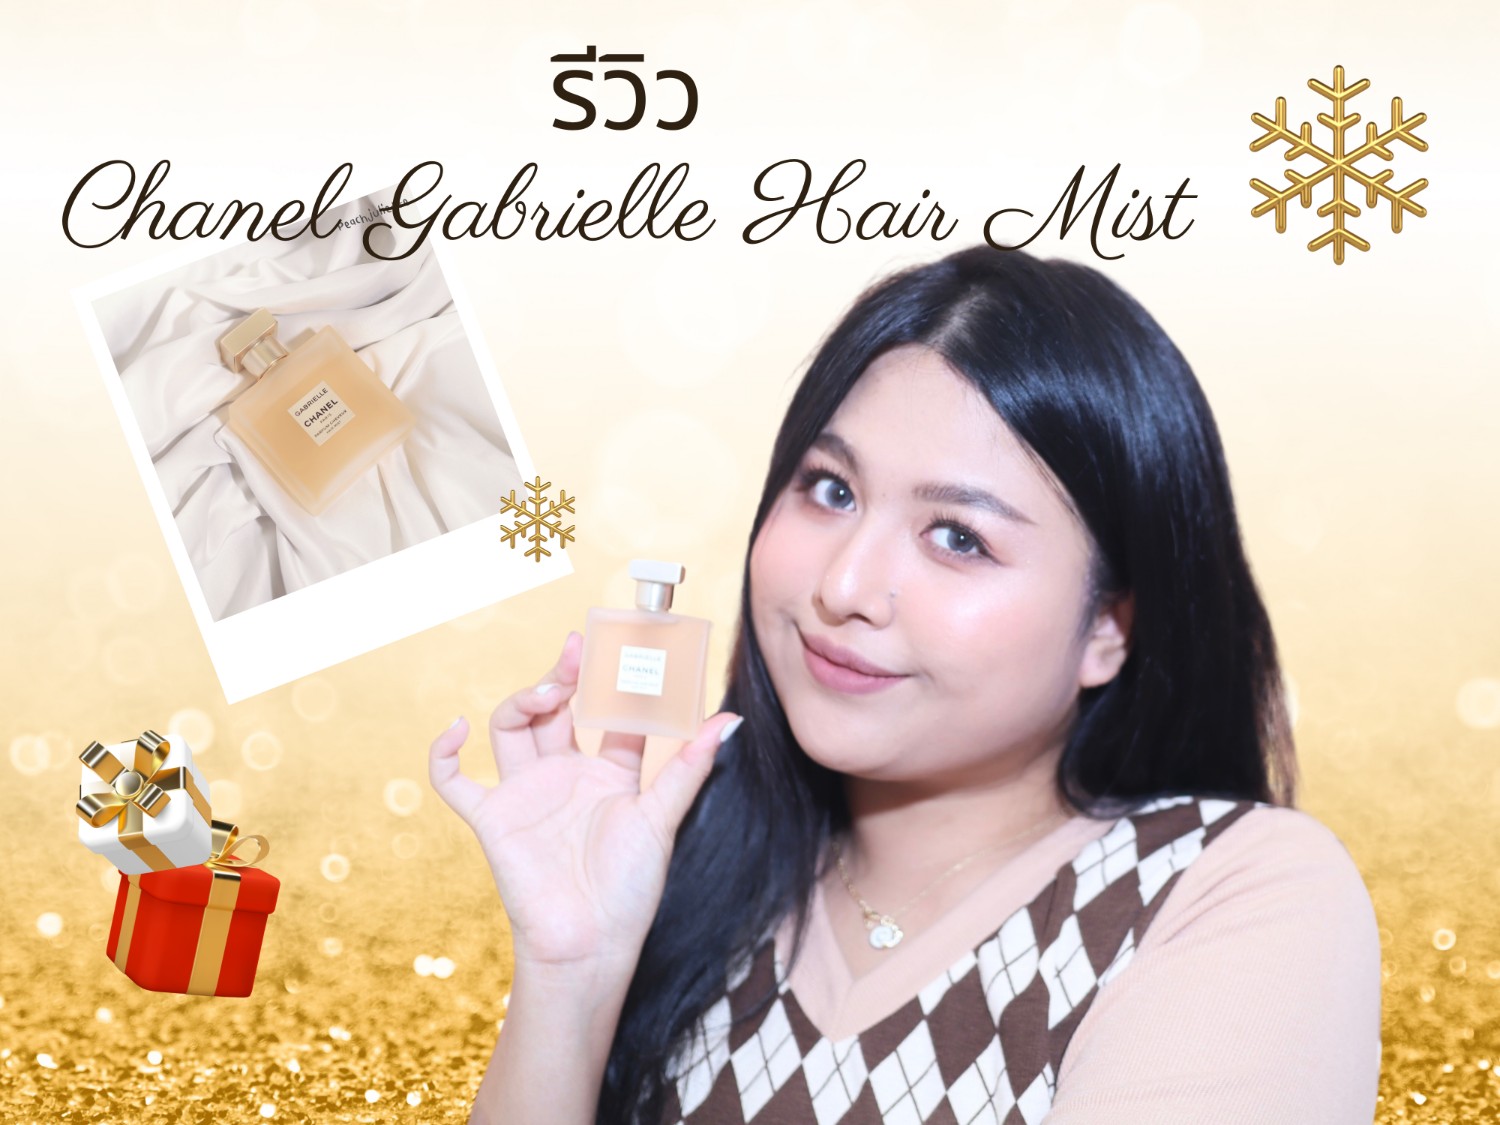 Chanel Gabrielle Hair Mist 40ml/1.35oz